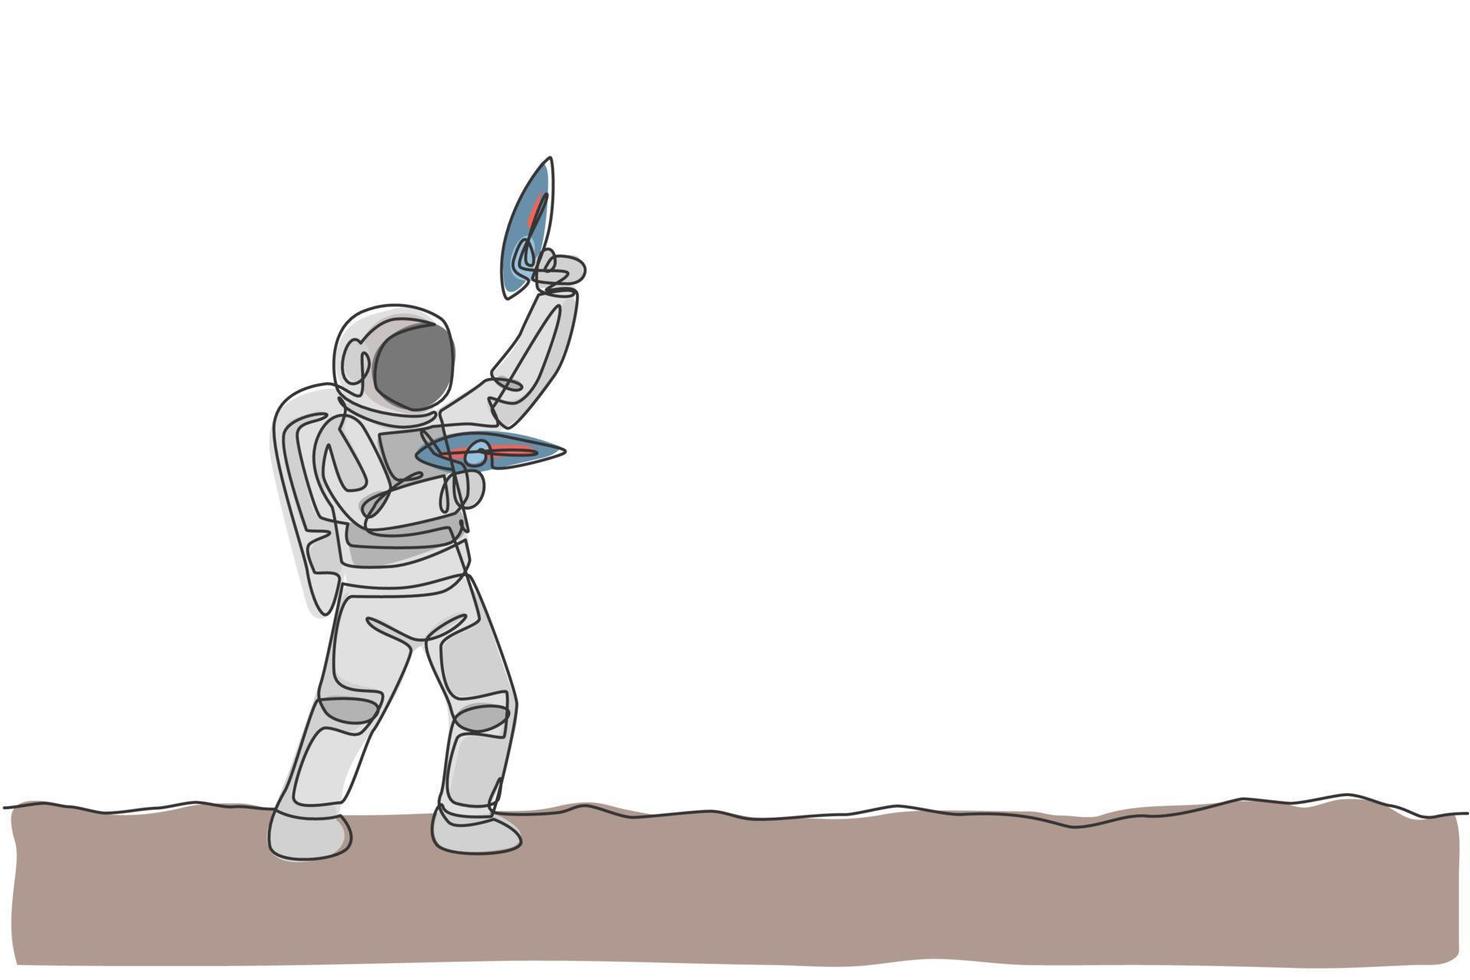 un disegno a linea continua di un giovane astronauta che spara usando una pistola laser spaziale per uccidere il nemico sulla superficie lunare. concetto di spazio galassia cosmica. illustrazione vettoriale di disegno grafico di disegno grafico a linea singola dinamica